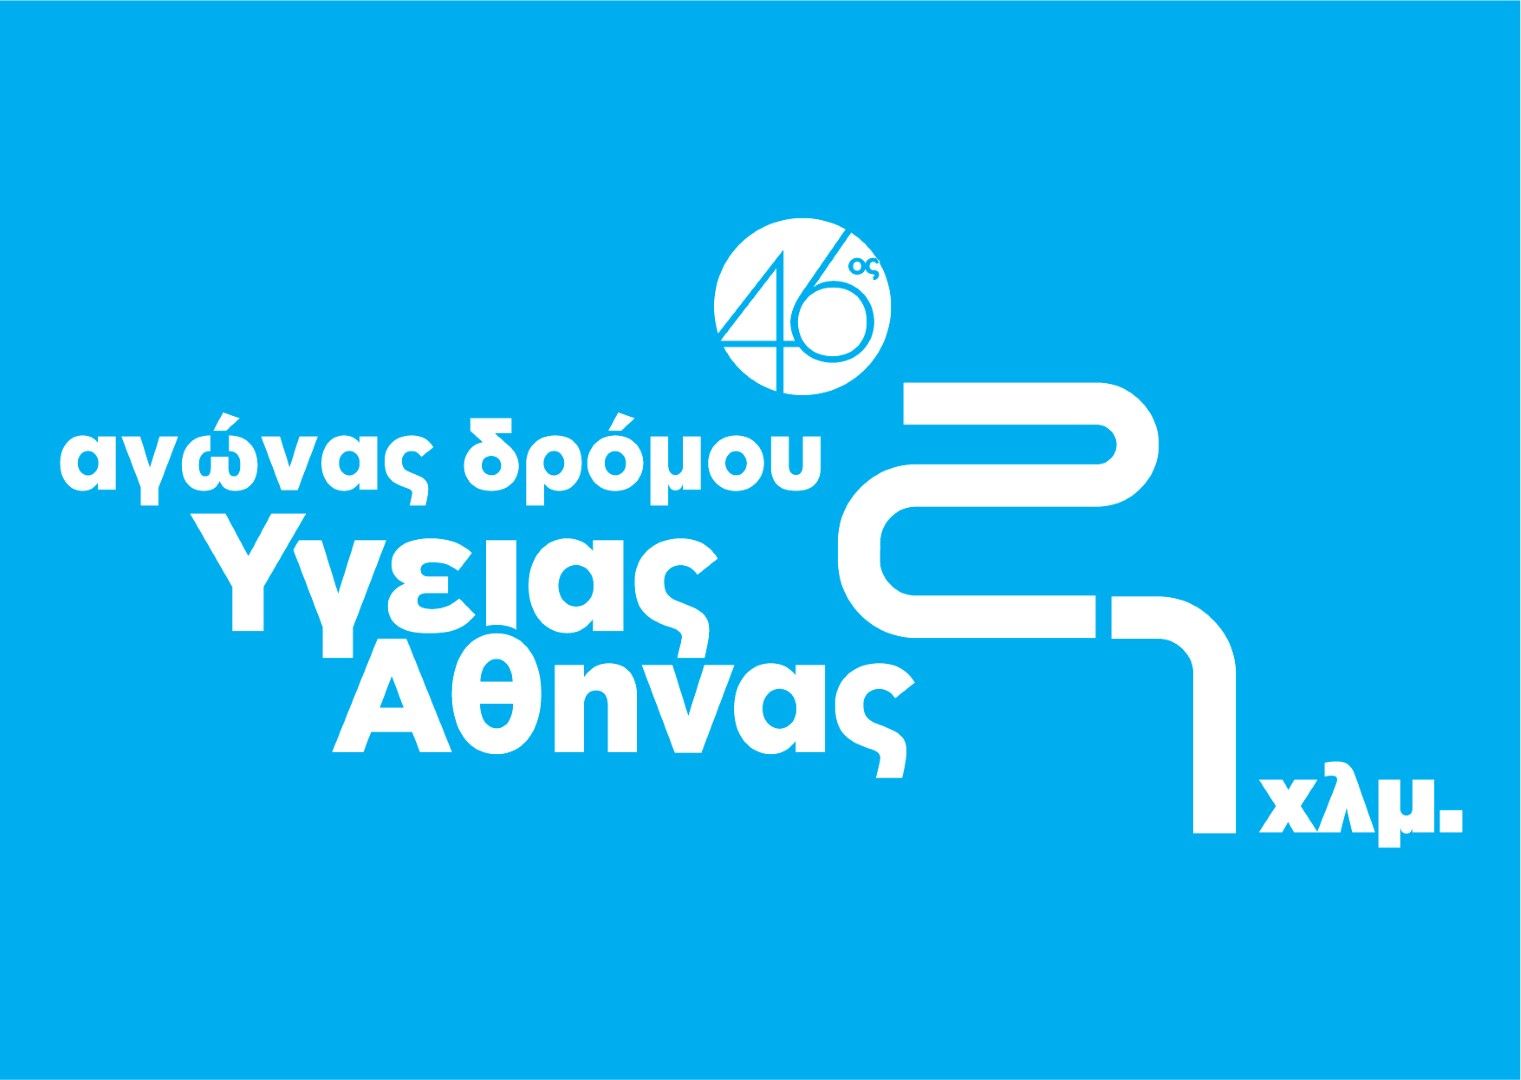 46ος Αγώνας Δρόμου Υγείας Αθήνας 21,1 χλμ